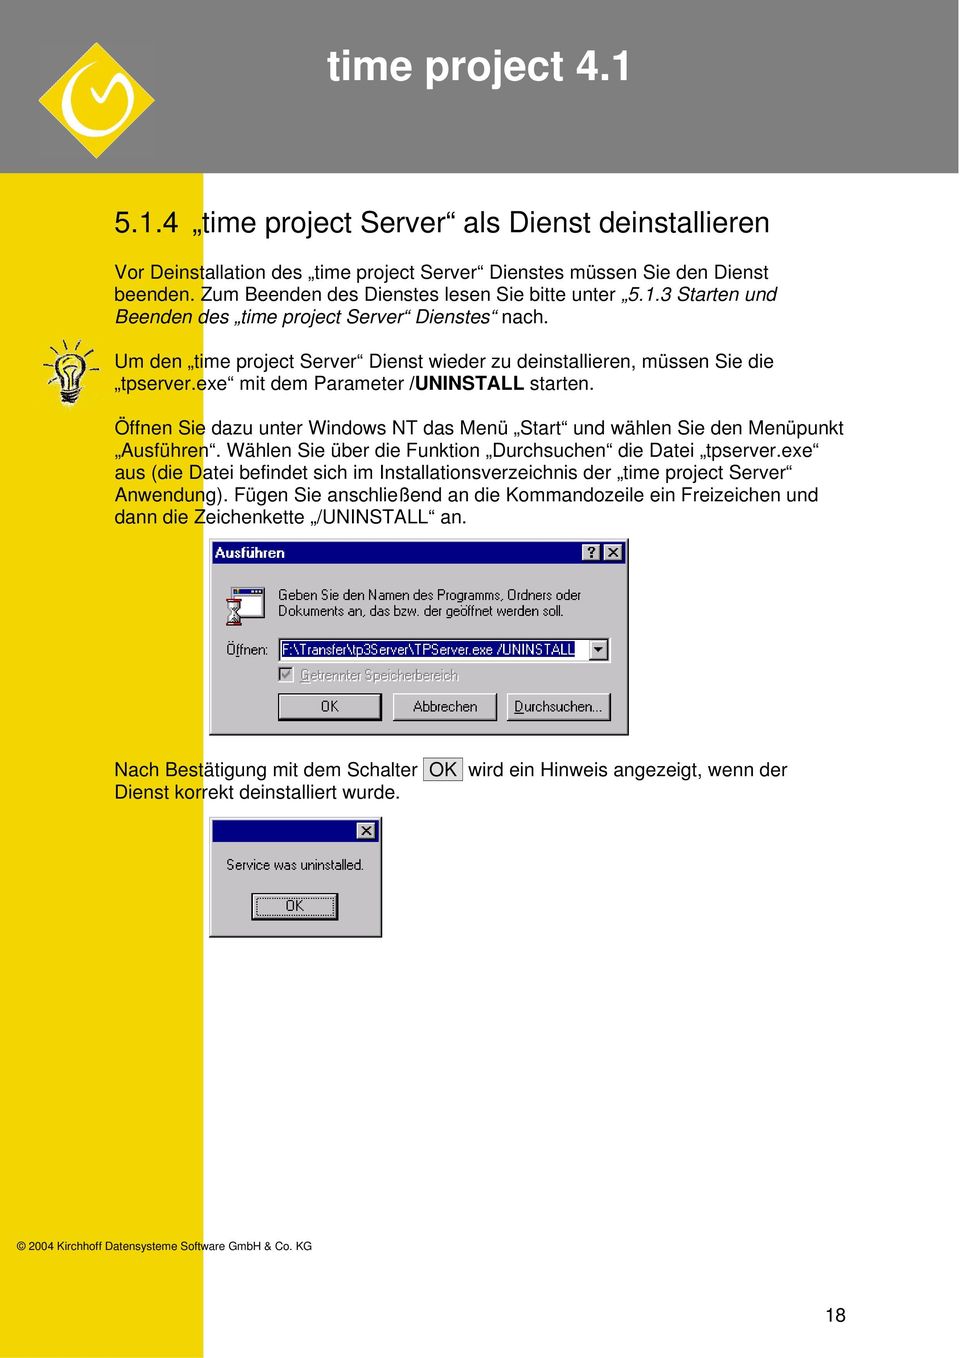 Öffnen Sie dazu unter Windows NT das Menü Start und wählen Sie den Menüpunkt Ausführen. Wählen Sie über die Funktion Durchsuchen die Datei tpserver.